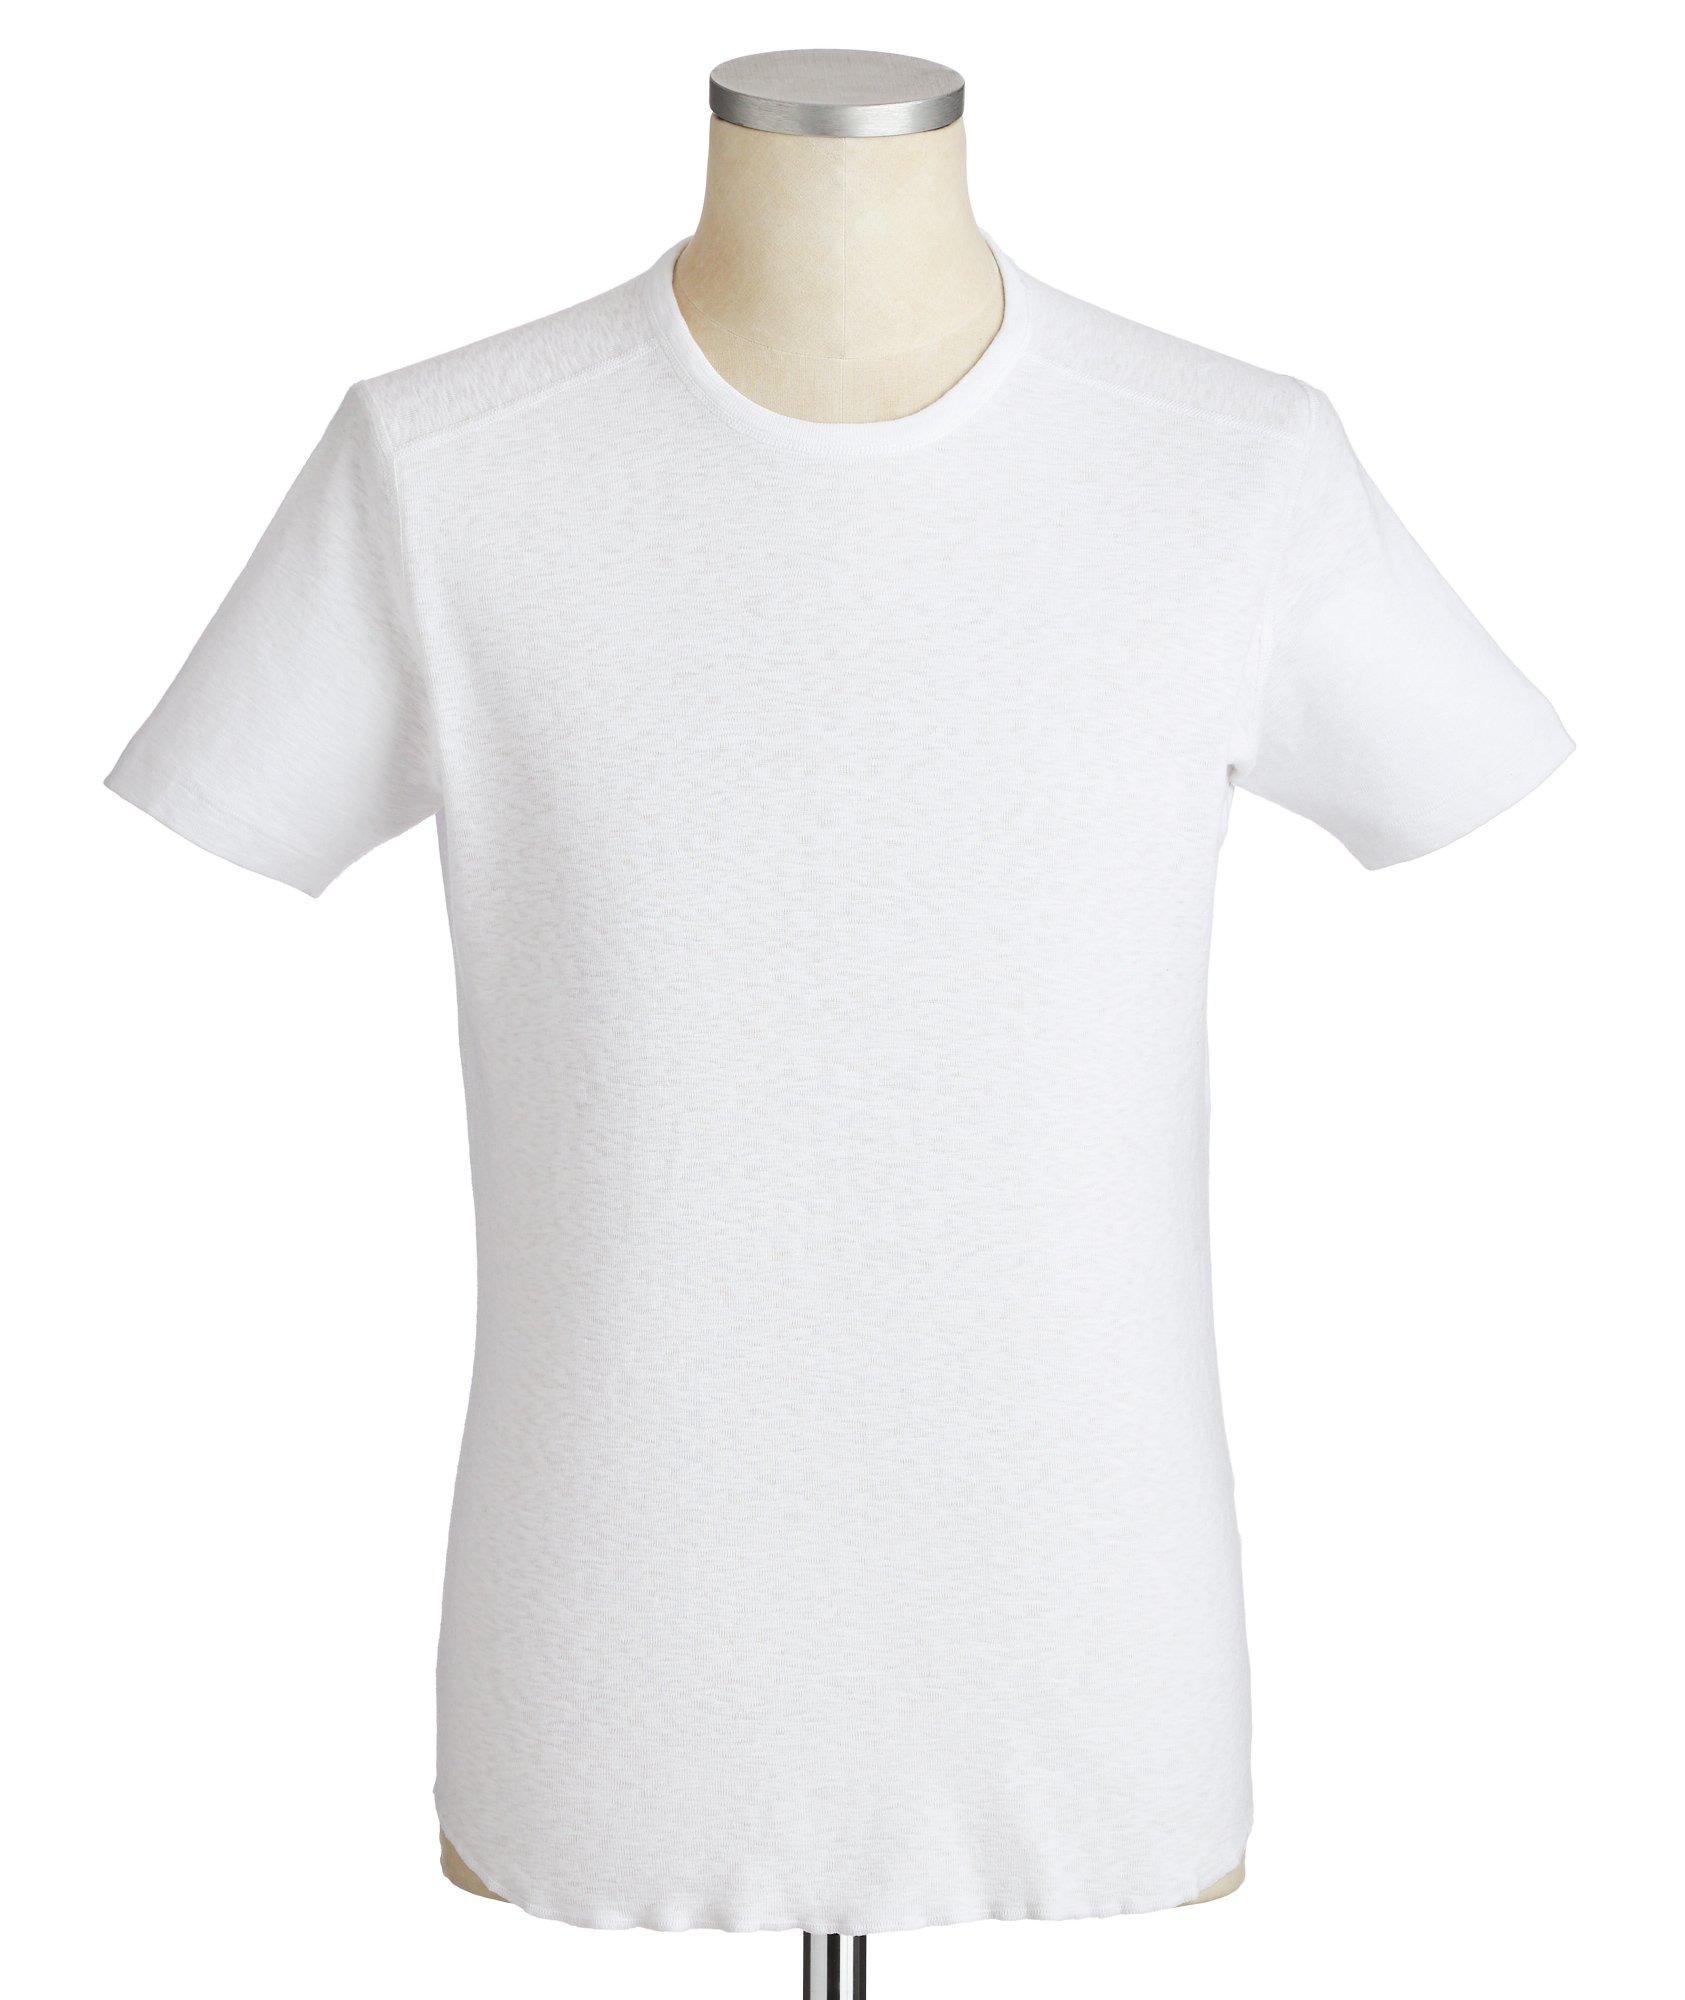 Burnout Cotton T-Shirt image 0